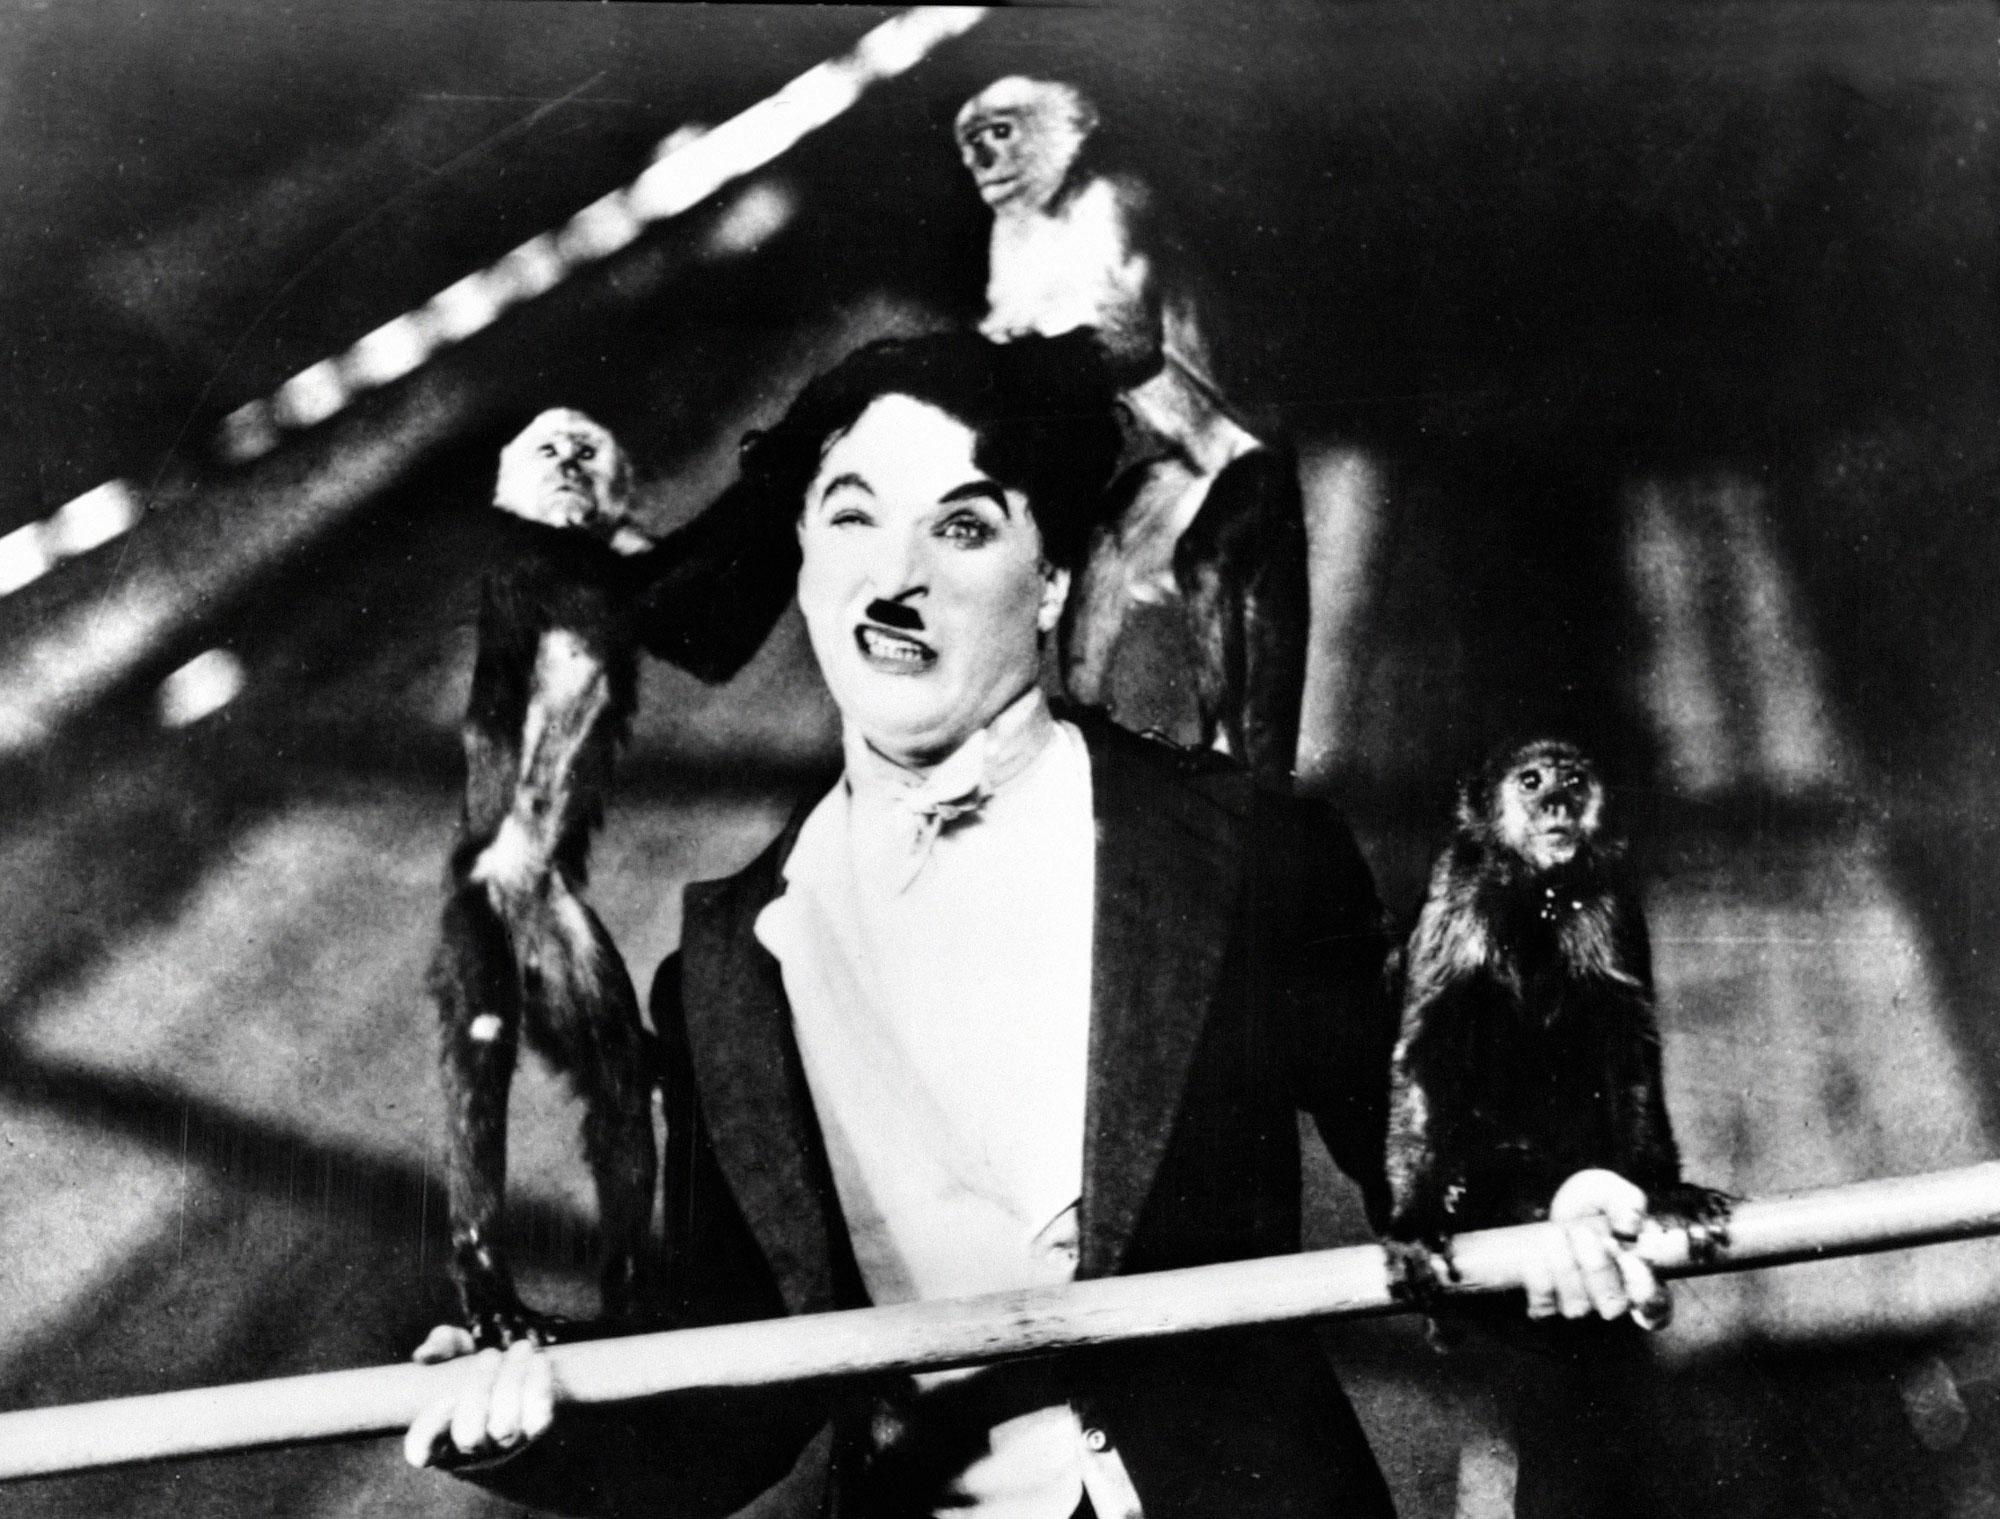 Charlie Chaplin, équilibriste, dans "Le cirque" tourné en 1928 [Collection Cinema / Photo12/AFP]